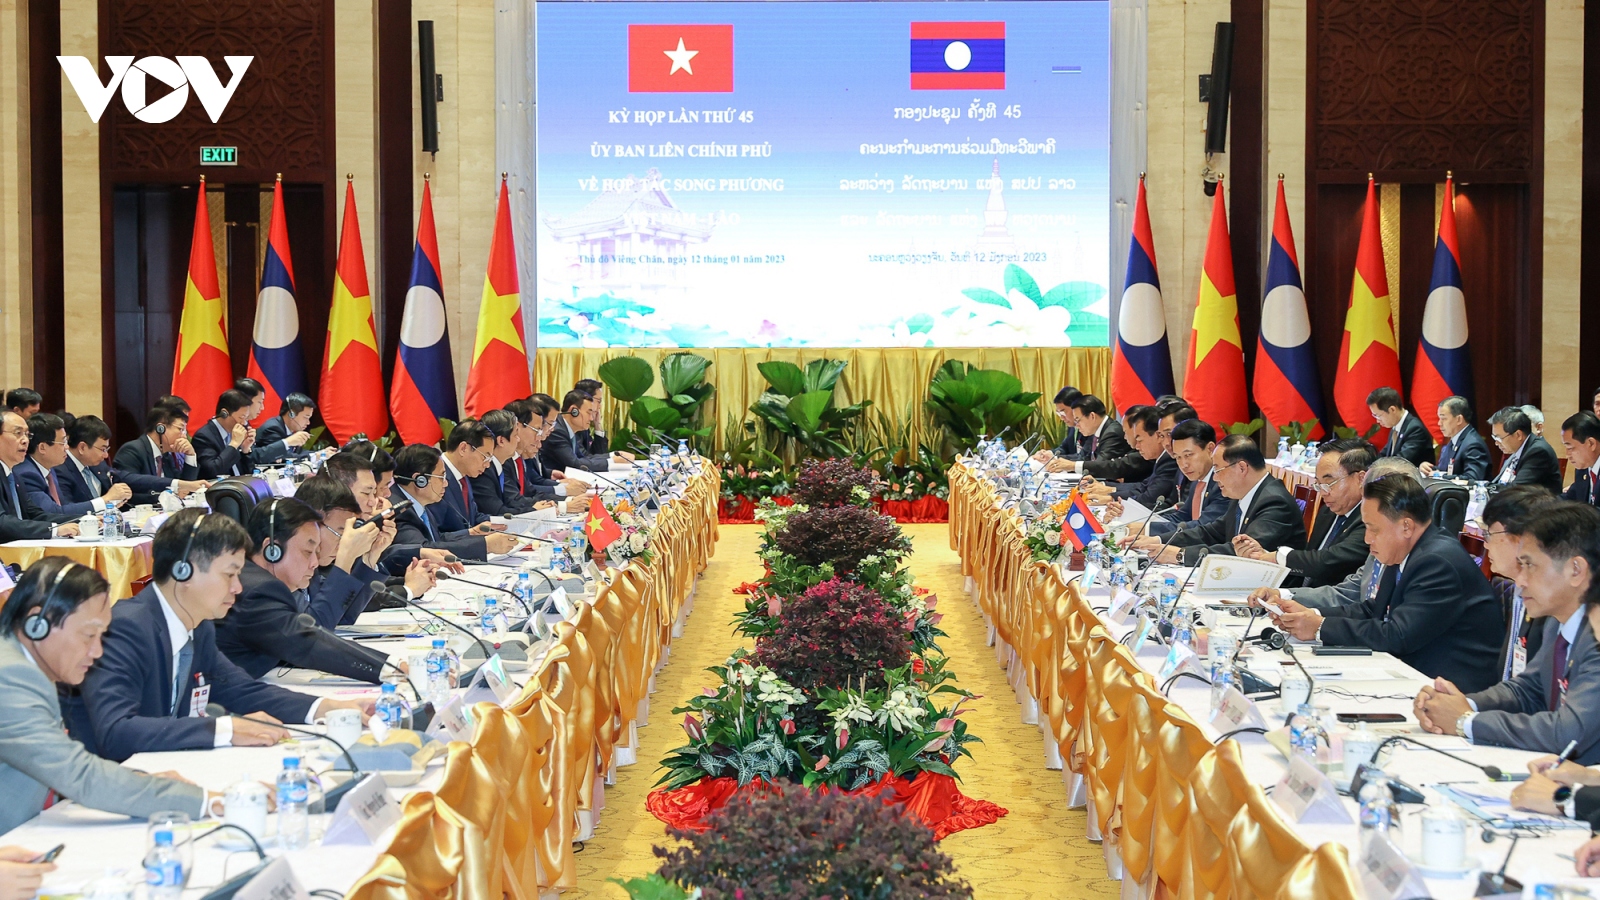 Thủ tướng hai nước Việt Nam và Lào chủ trì kỳ họp 45 Ủy ban Liên Chính phủ